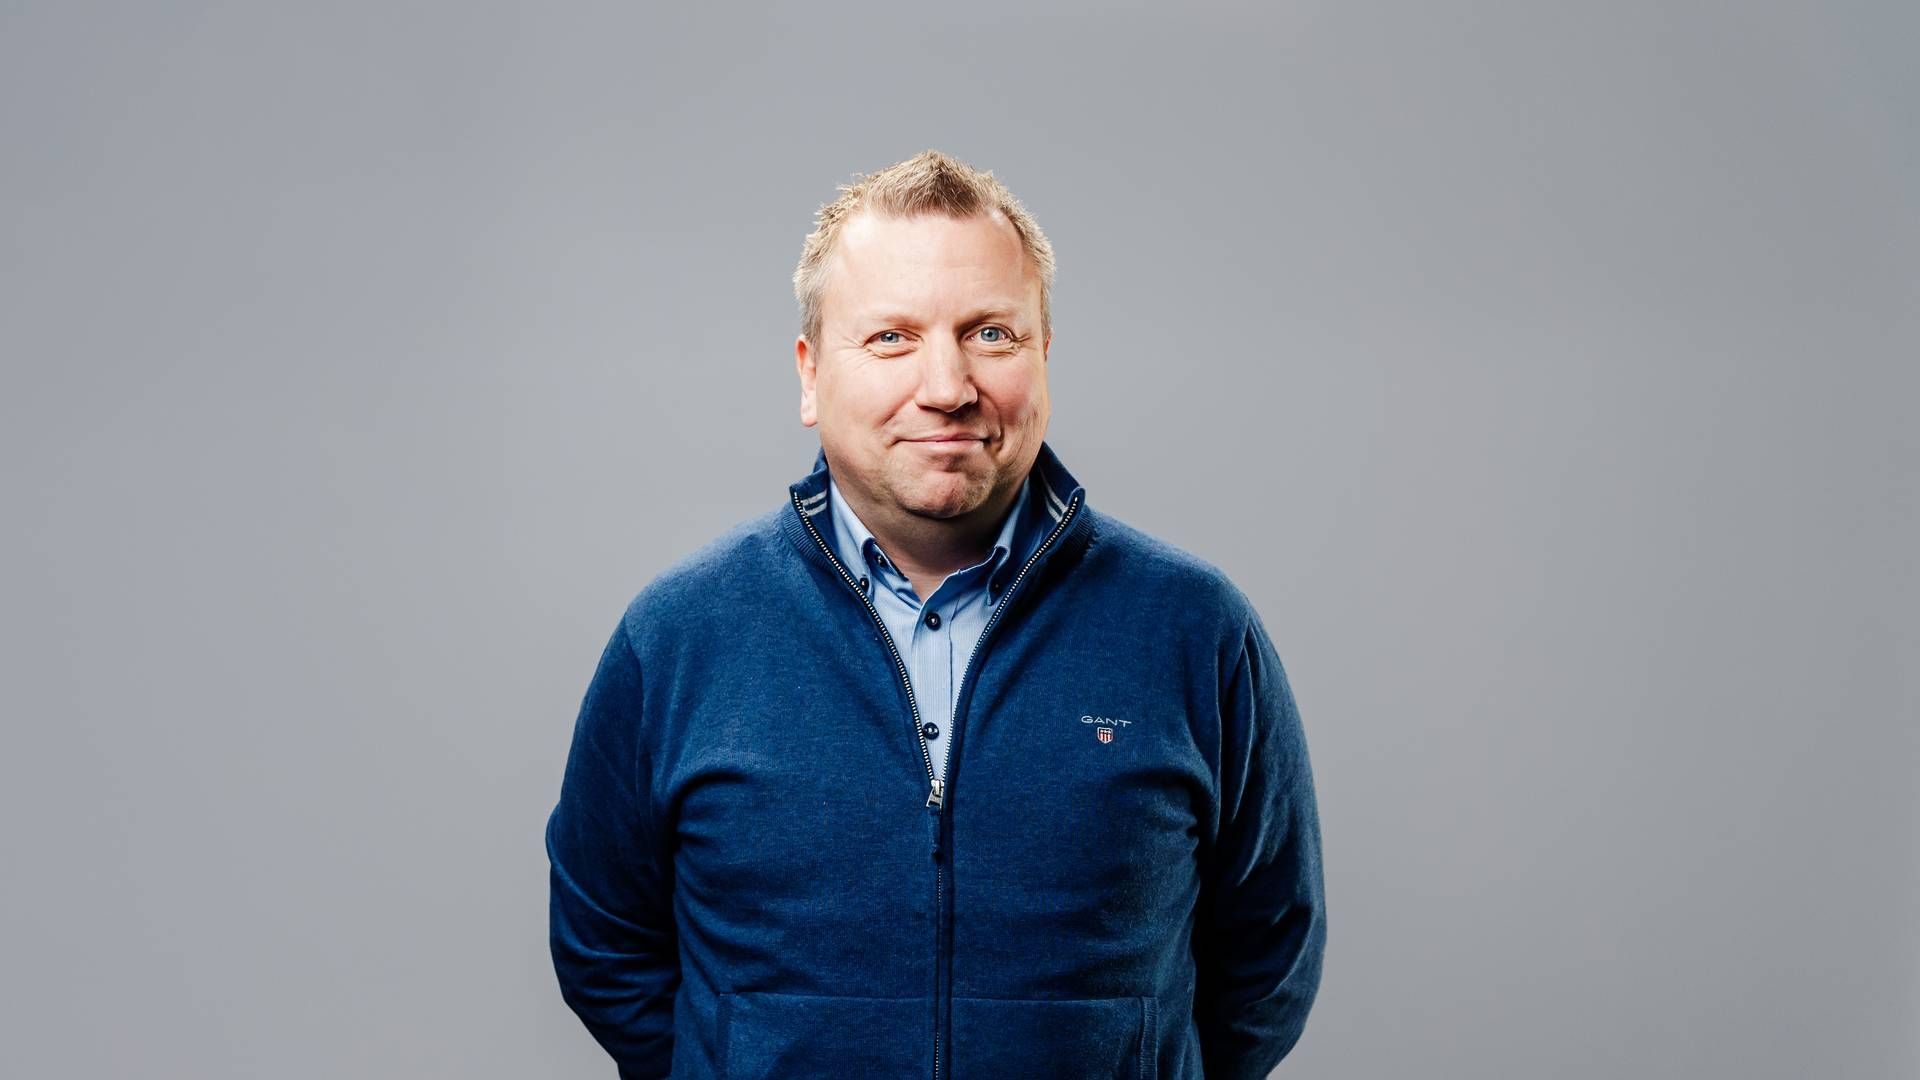 Administrerende direktør i OBOS-banken Øistein Gamst Sandlie, sier det vil være en fordel for banken og eiendommeglerforetaket å knyttes tettere sammen. | Foto: Hampus Lundgren